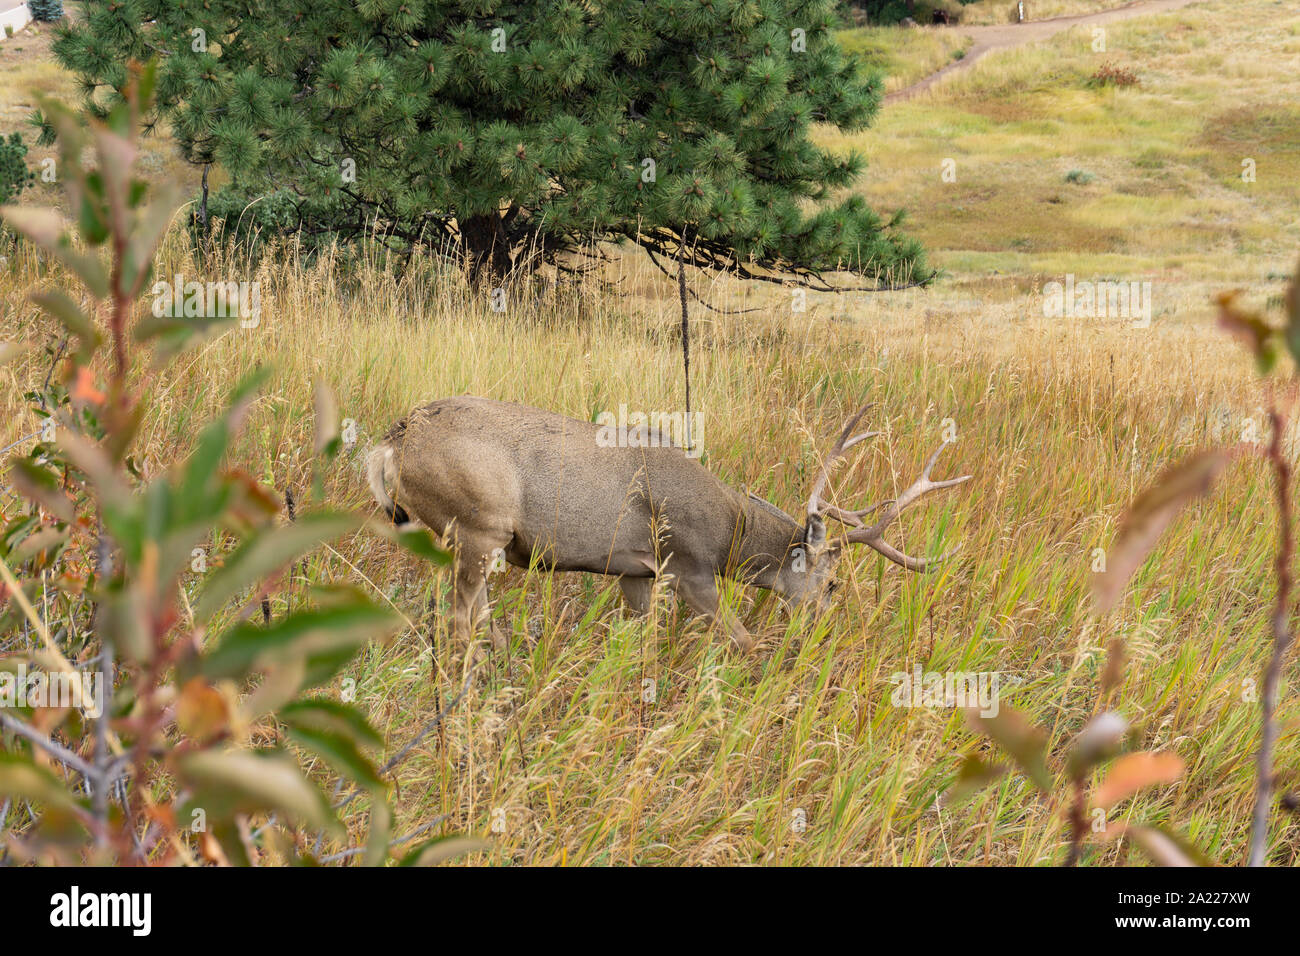 Large buck eating grass on hillside Stock Photo